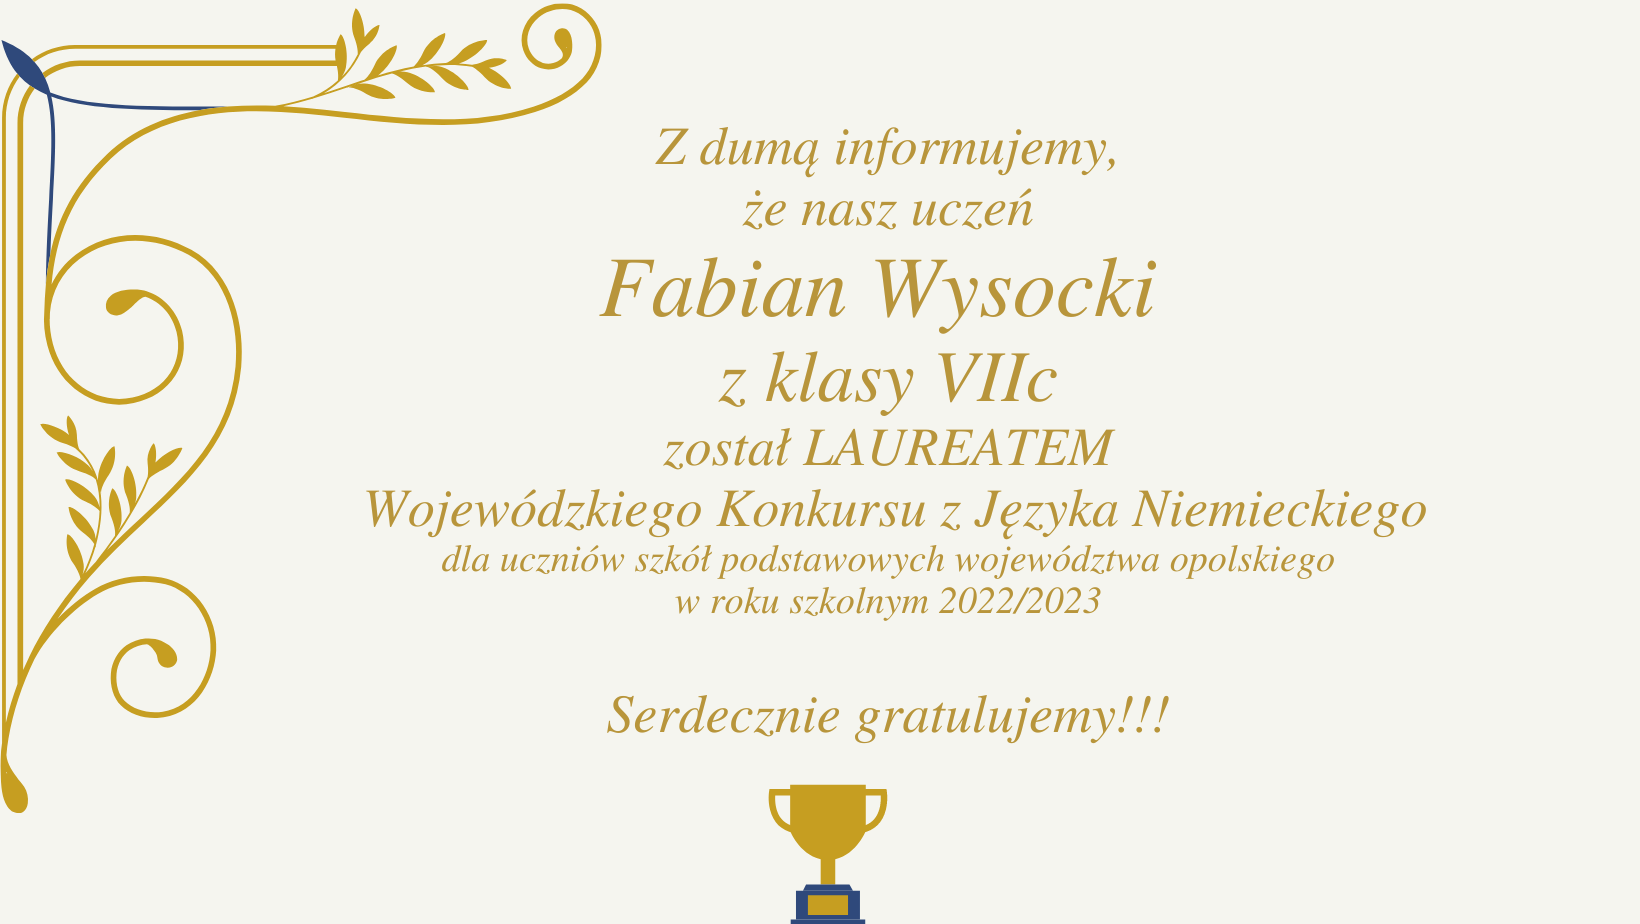 Laureat j. niemieckiego - Fabian Wysocki